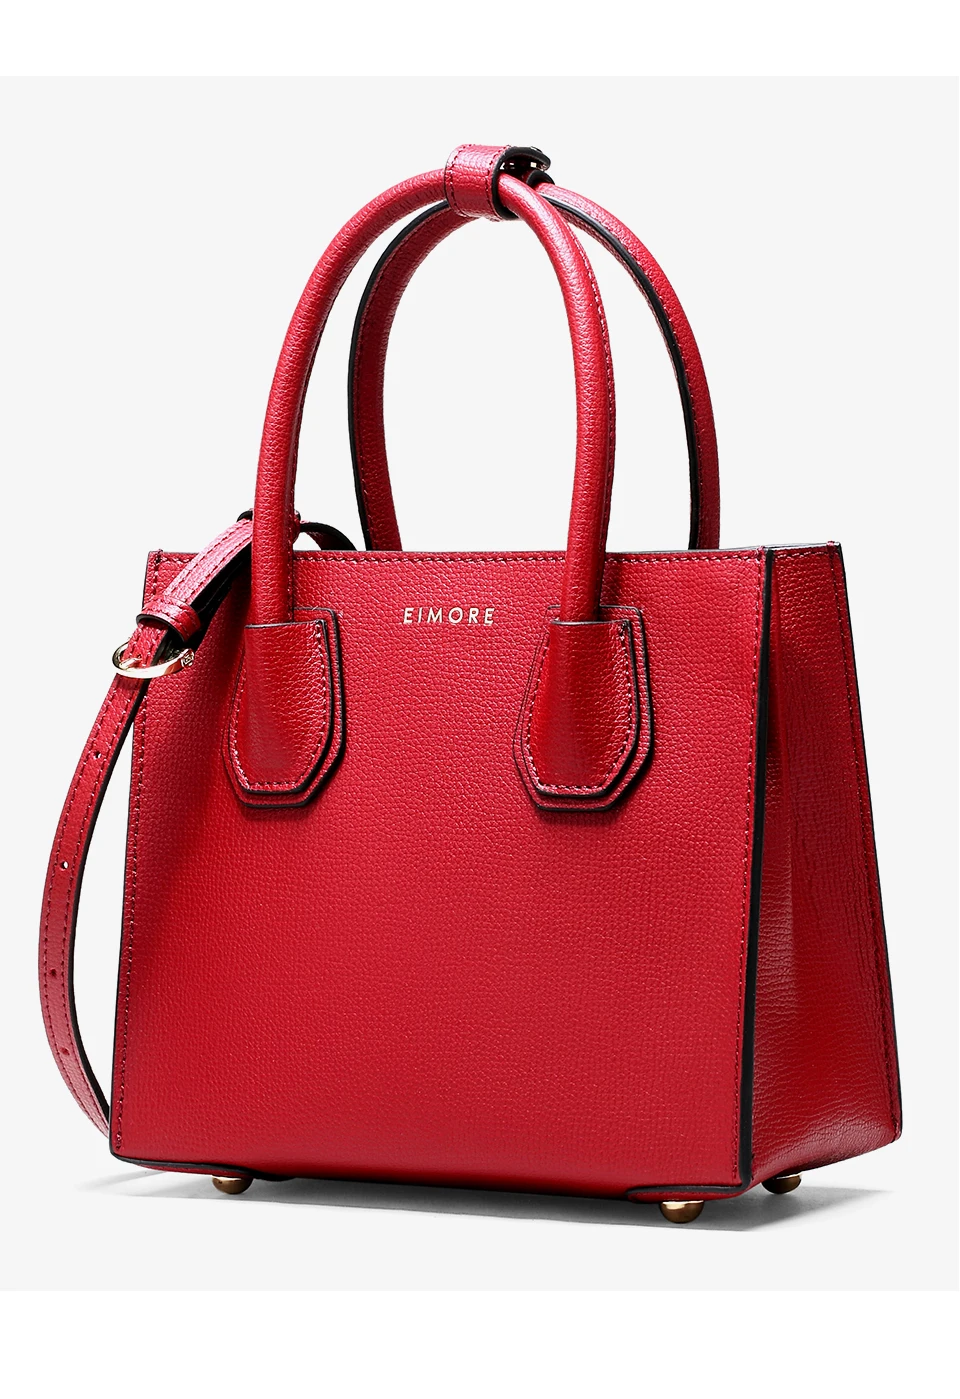 EIMORE nouveau Designer sac à main femmes sacs en cuir véritable marque célèbre femme sacs à bandoulière de haute qualité femmes sacs à main de luxe